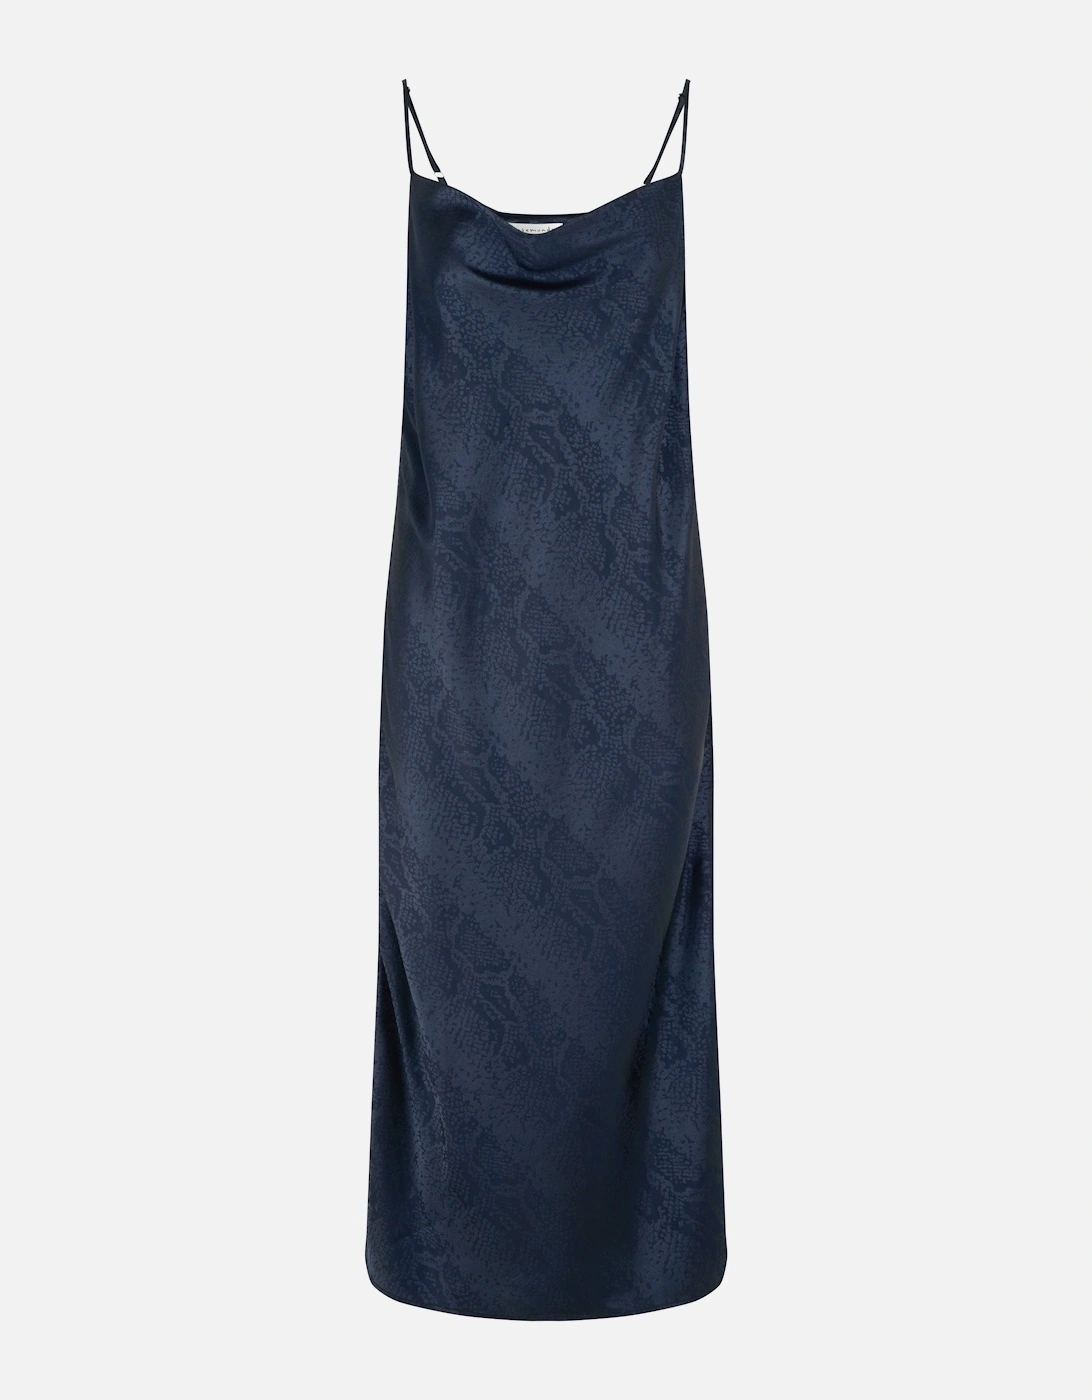 Borocay slip dress, 2 of 1